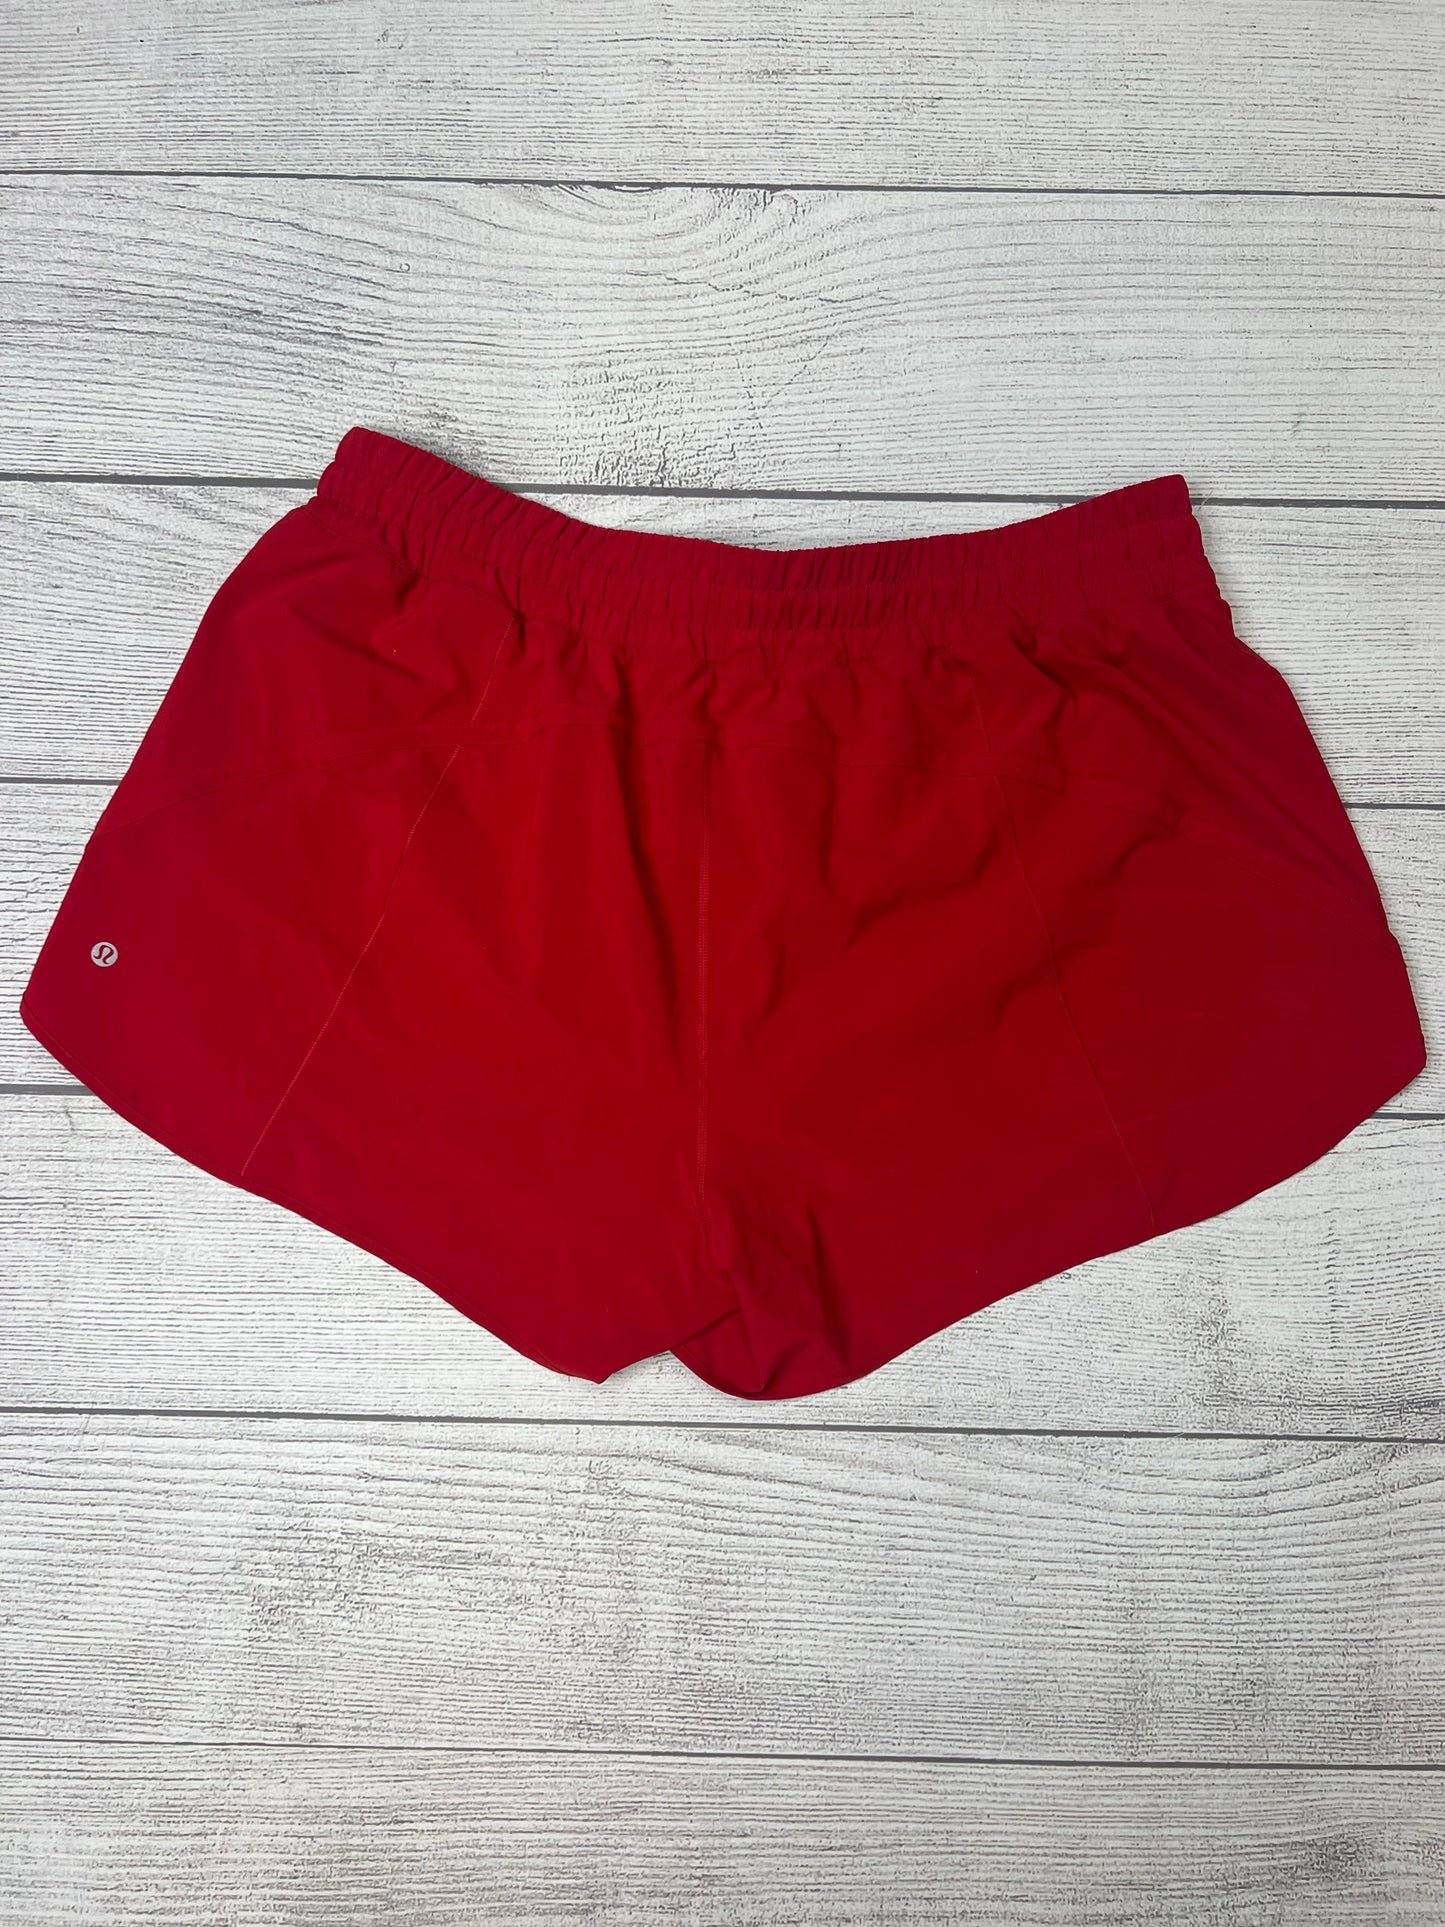 Red Athletic Shorts Lululemon, Size 1x